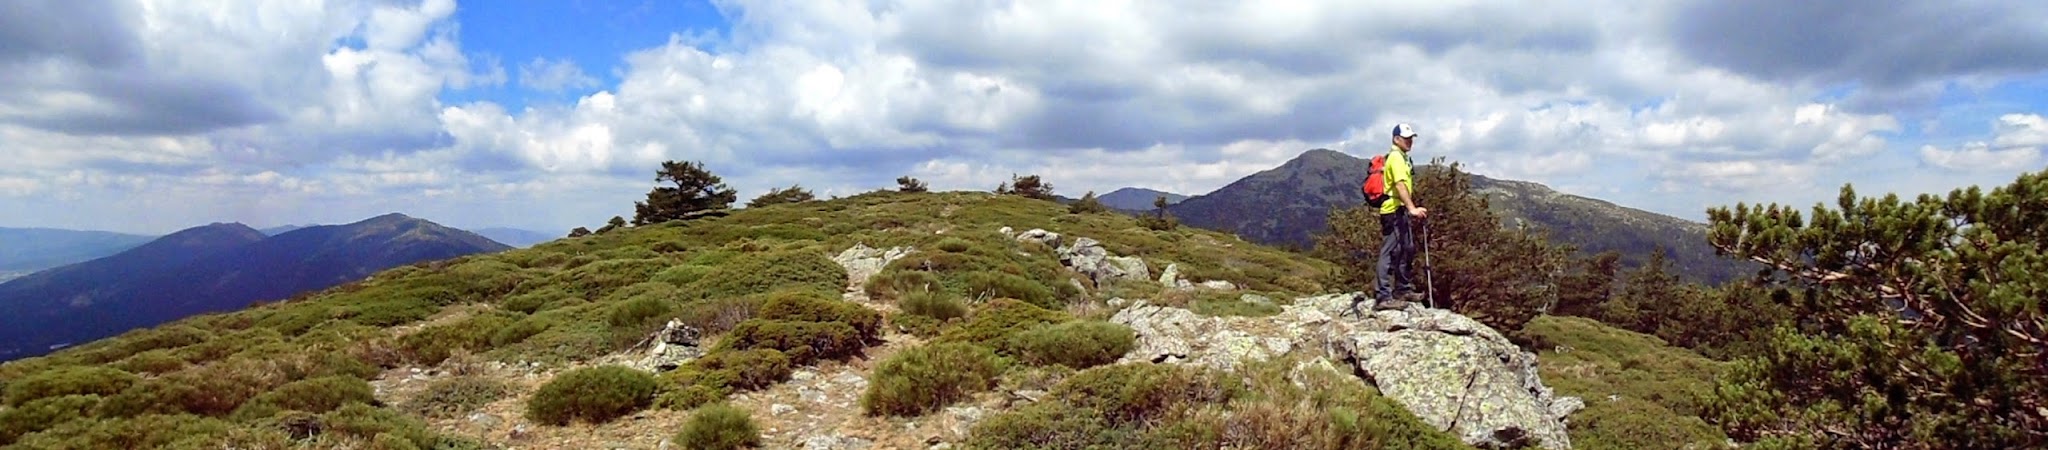 Cerro Ventoso